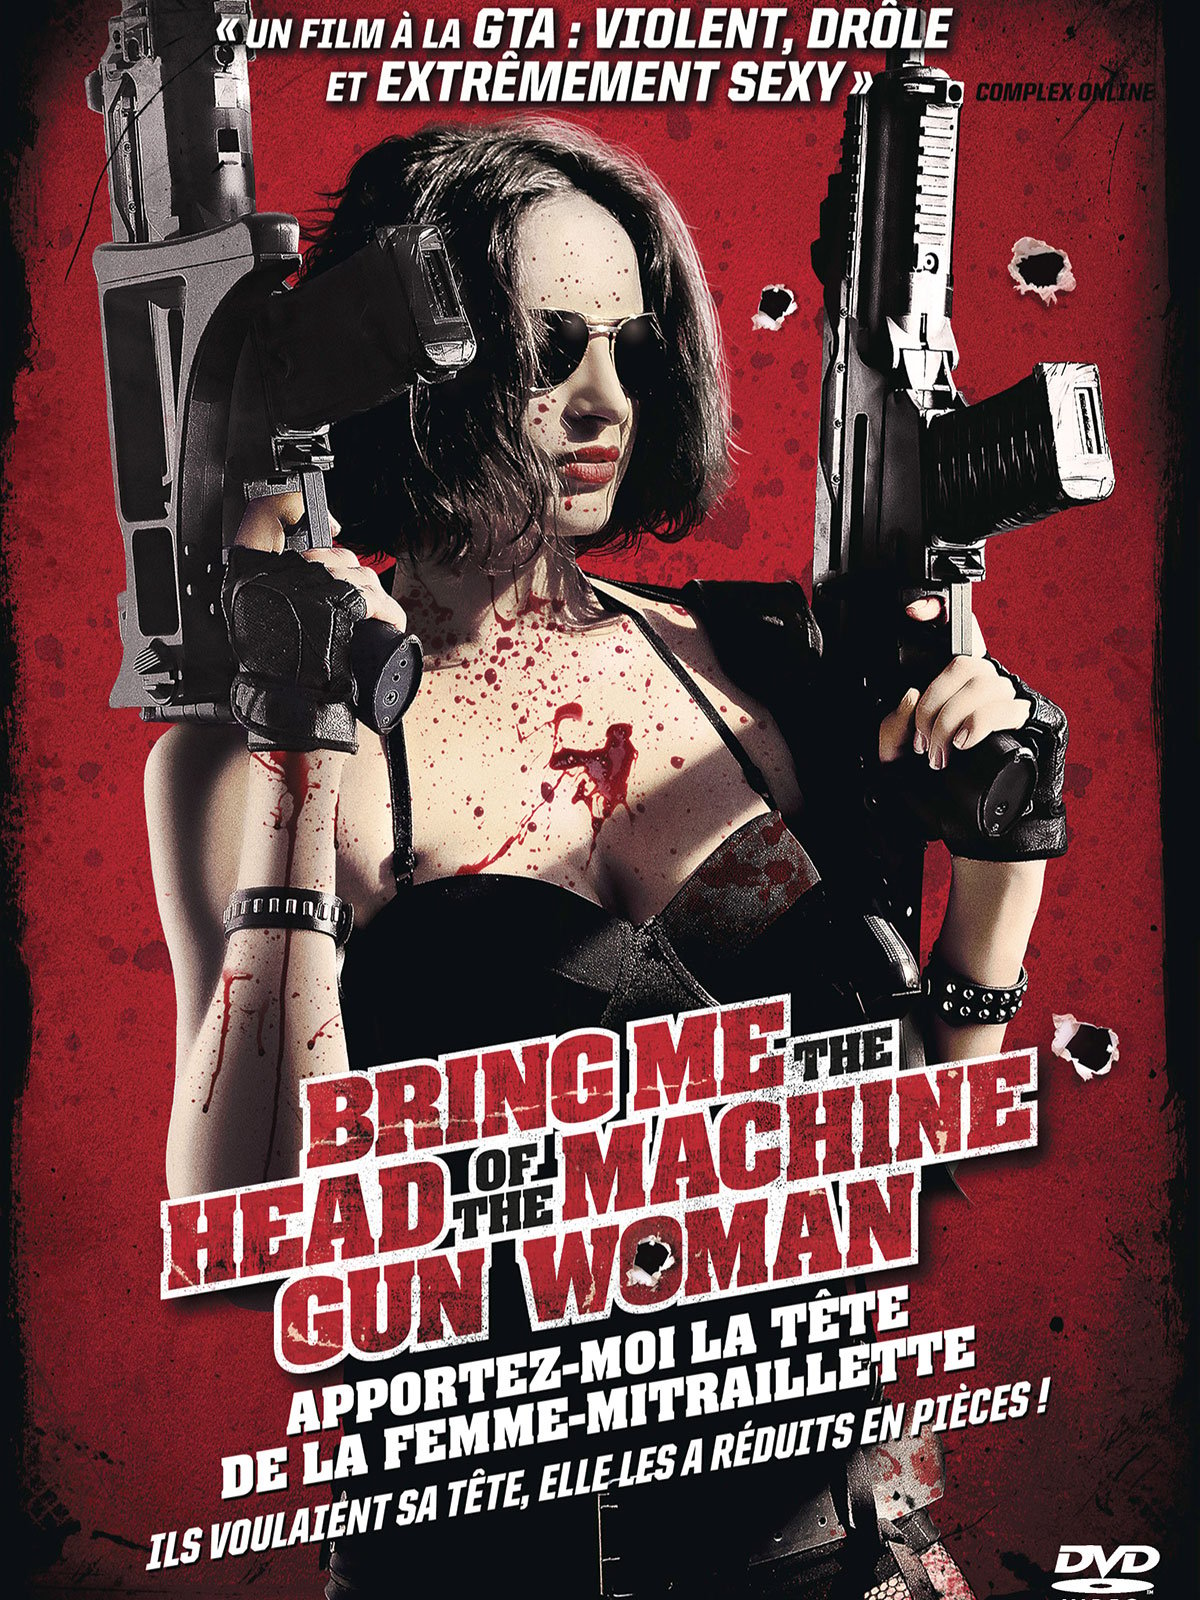 Bring Me The Head of The Machine Gun Woman - Apportez-moi la tête